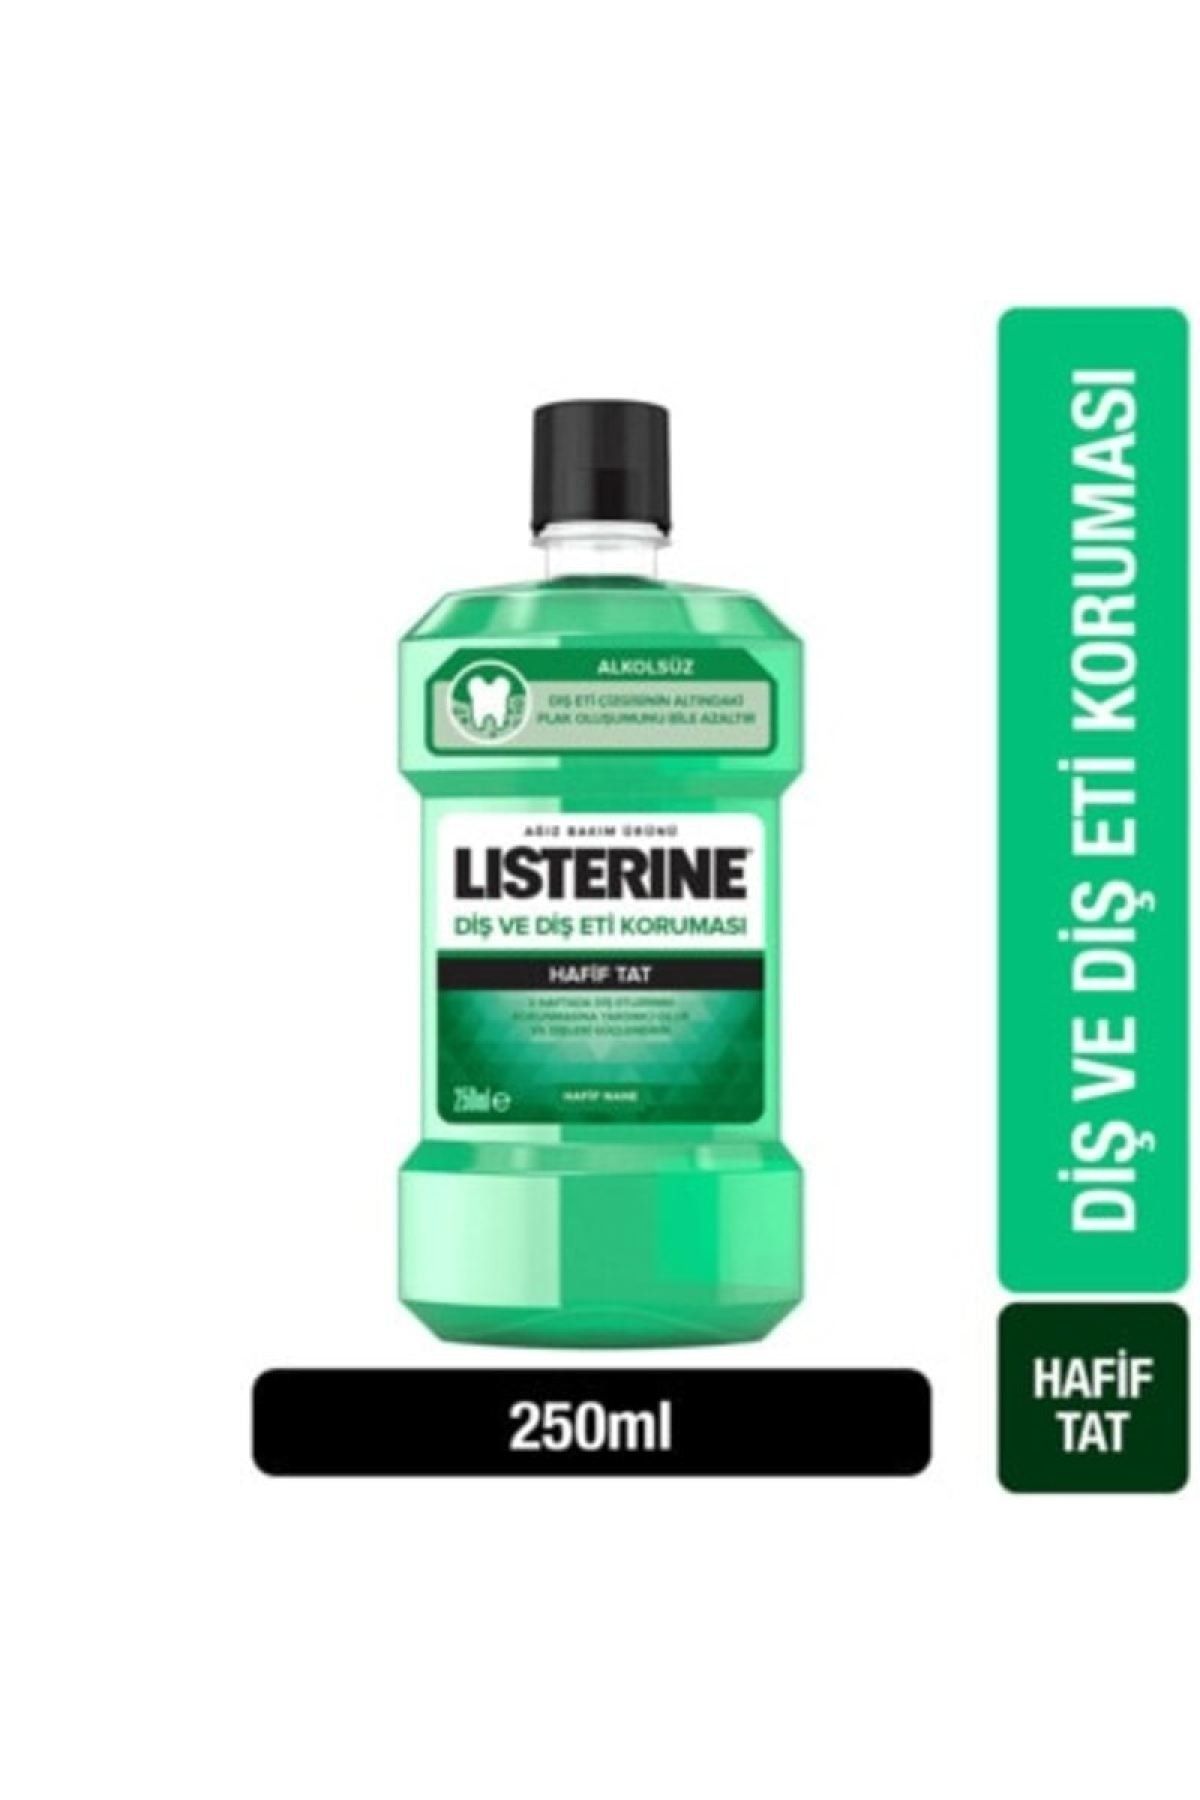 Listerine Diş Eti Bakımı Ağız Suyu Hafif Tat 250 Ml